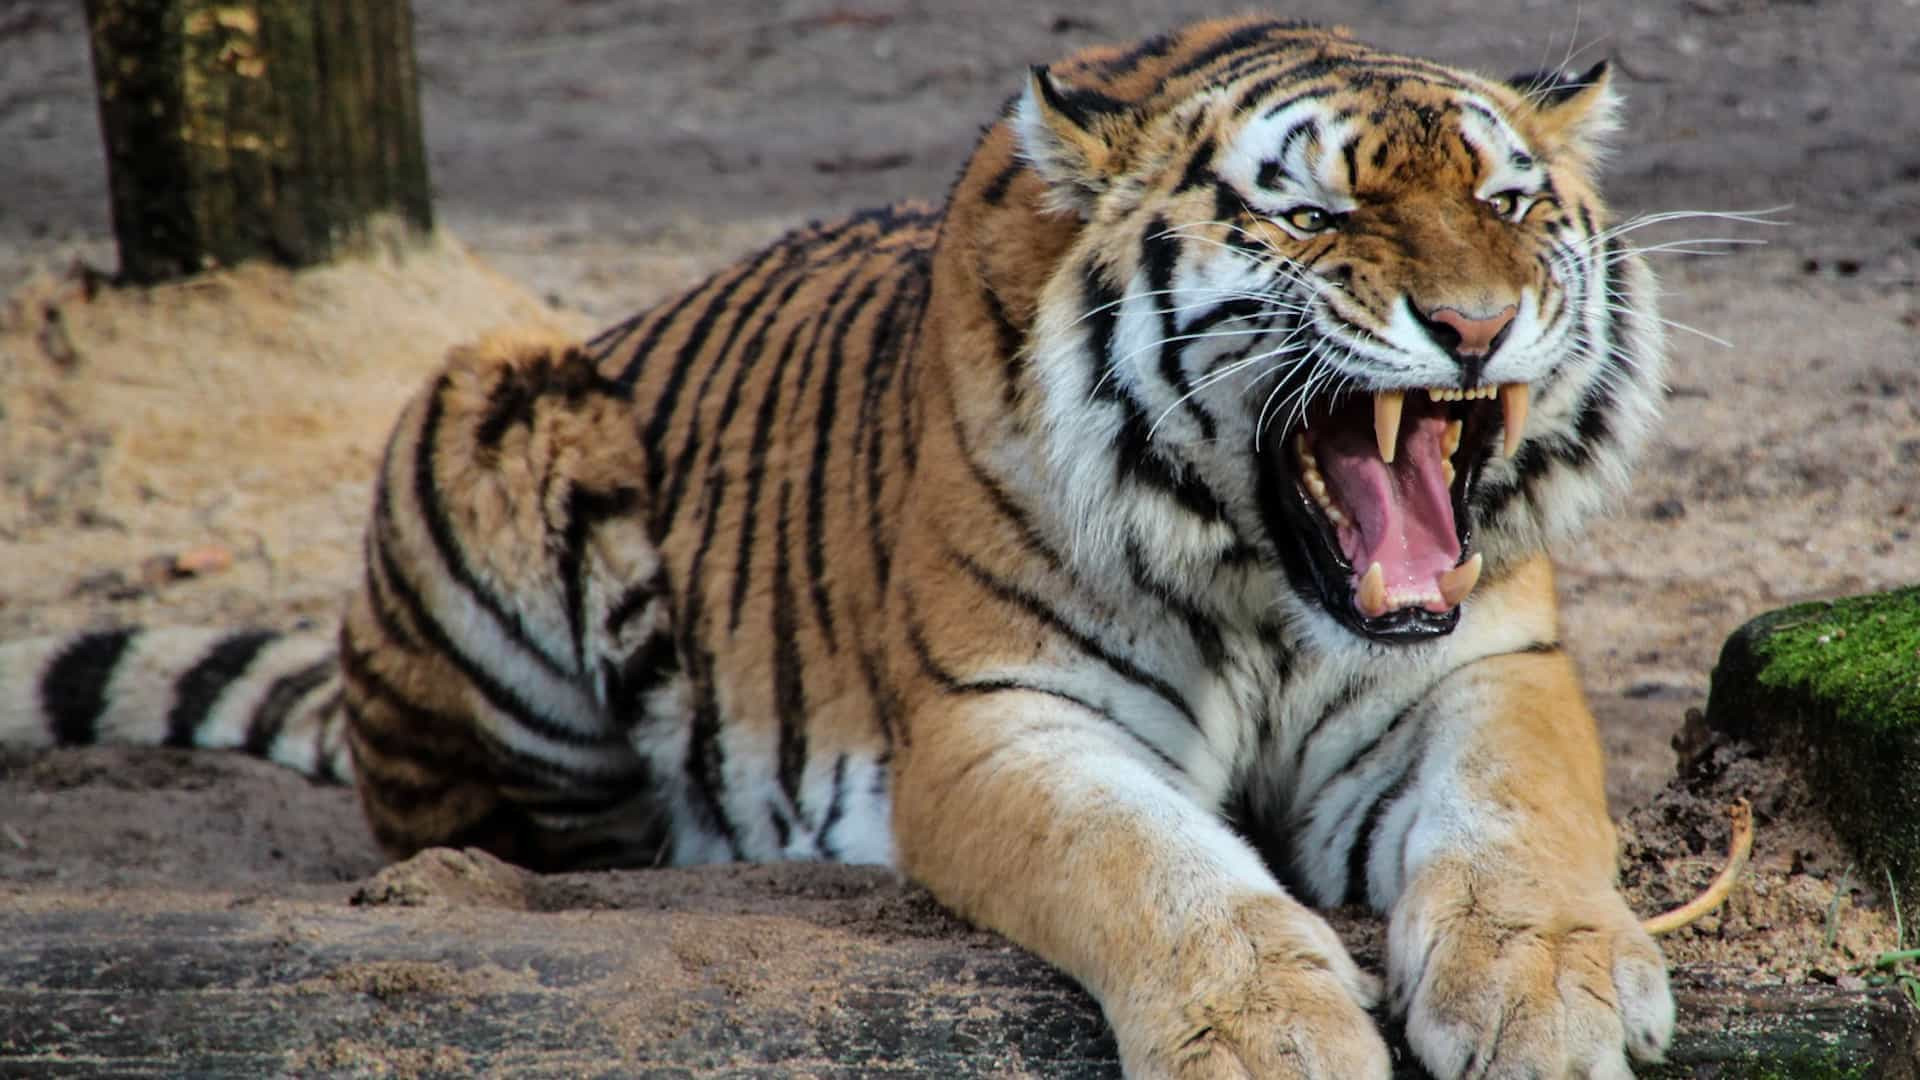 Tigre que vive em zoológico de Nova Iorque testa positivo para Covid-19